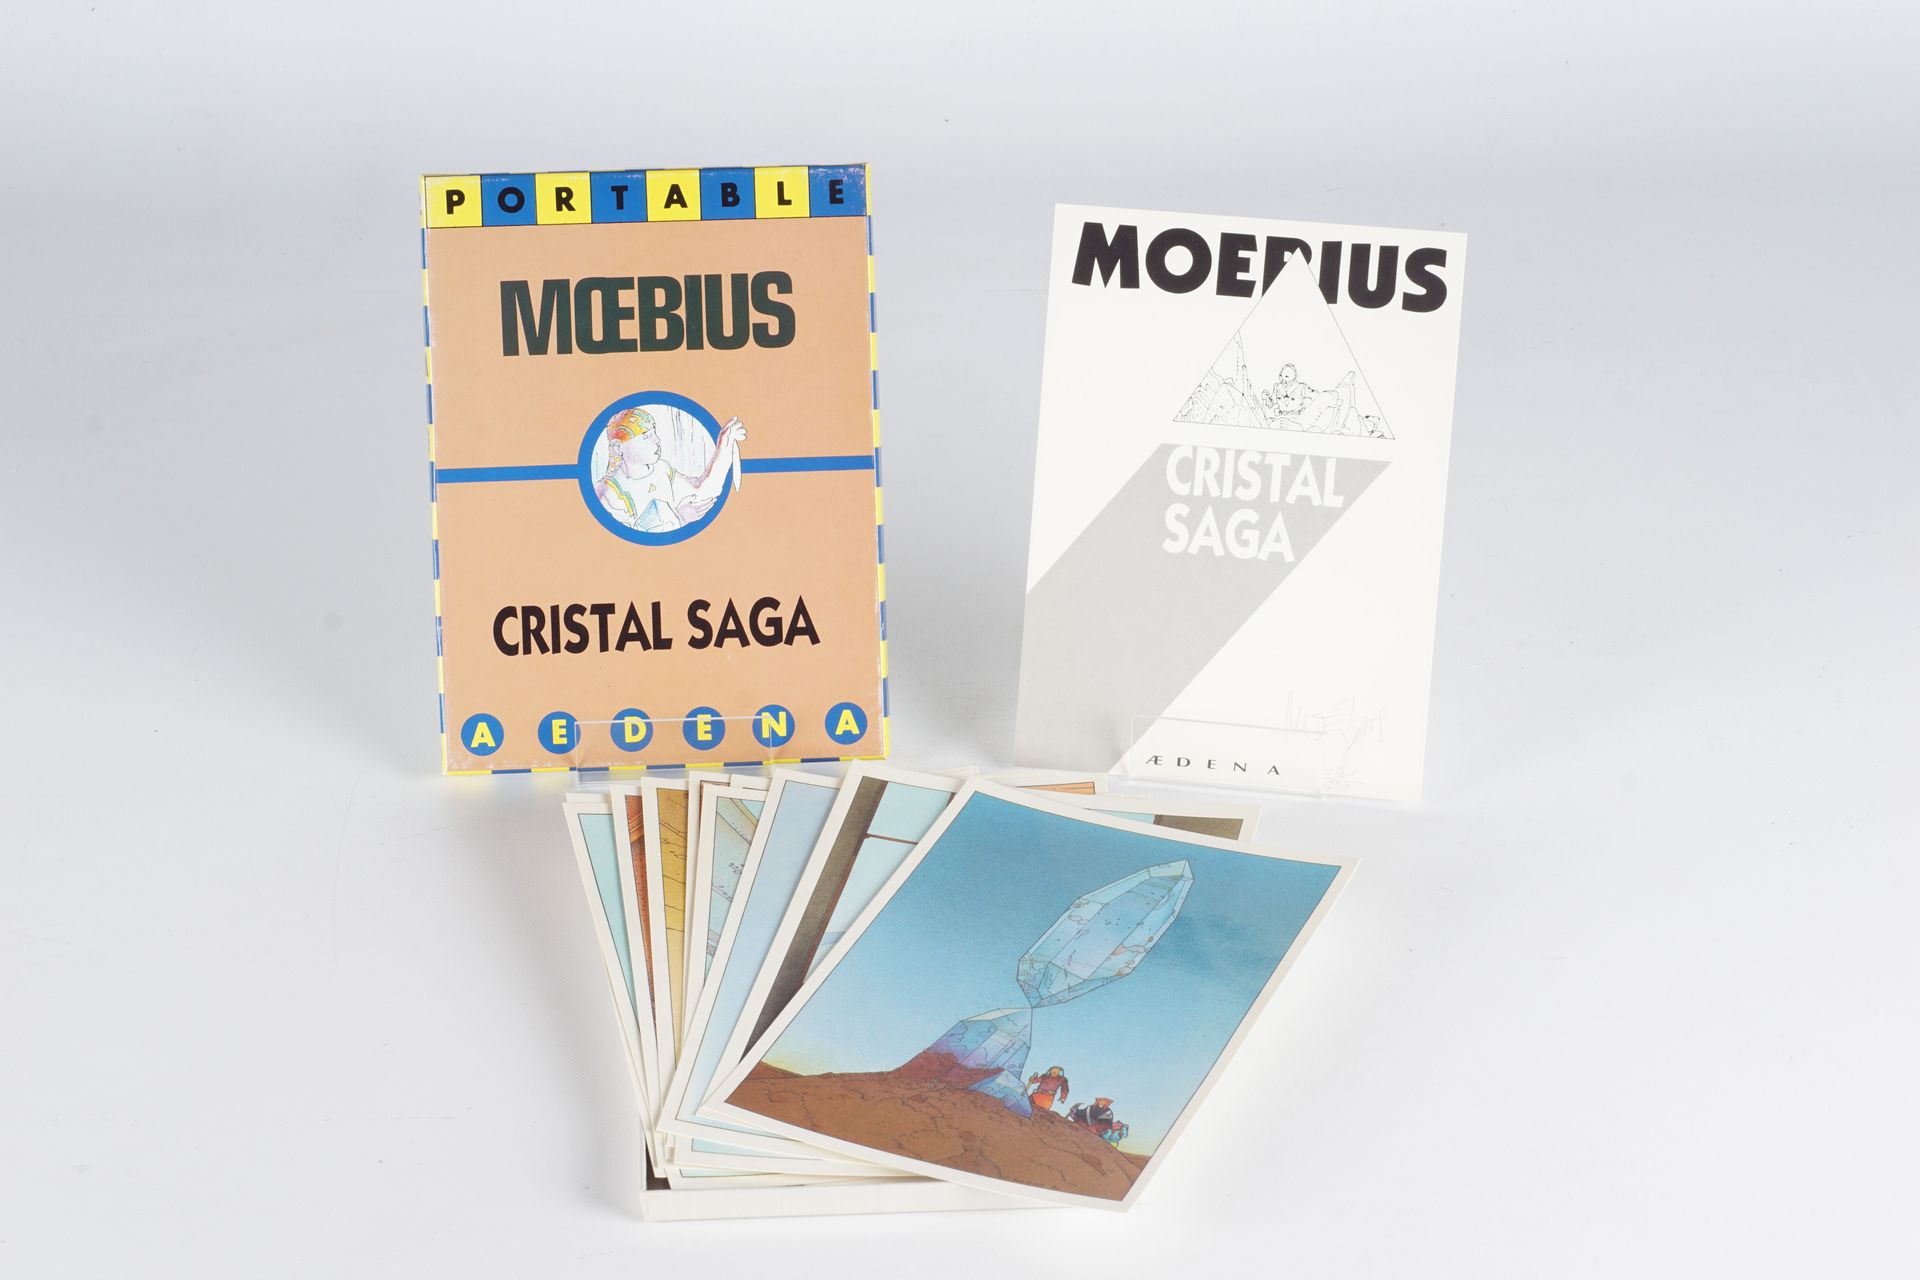 MOEBIUS Portafolio "Cristal Saga", 1986, contiene una portada numerada y firmada&hellip;